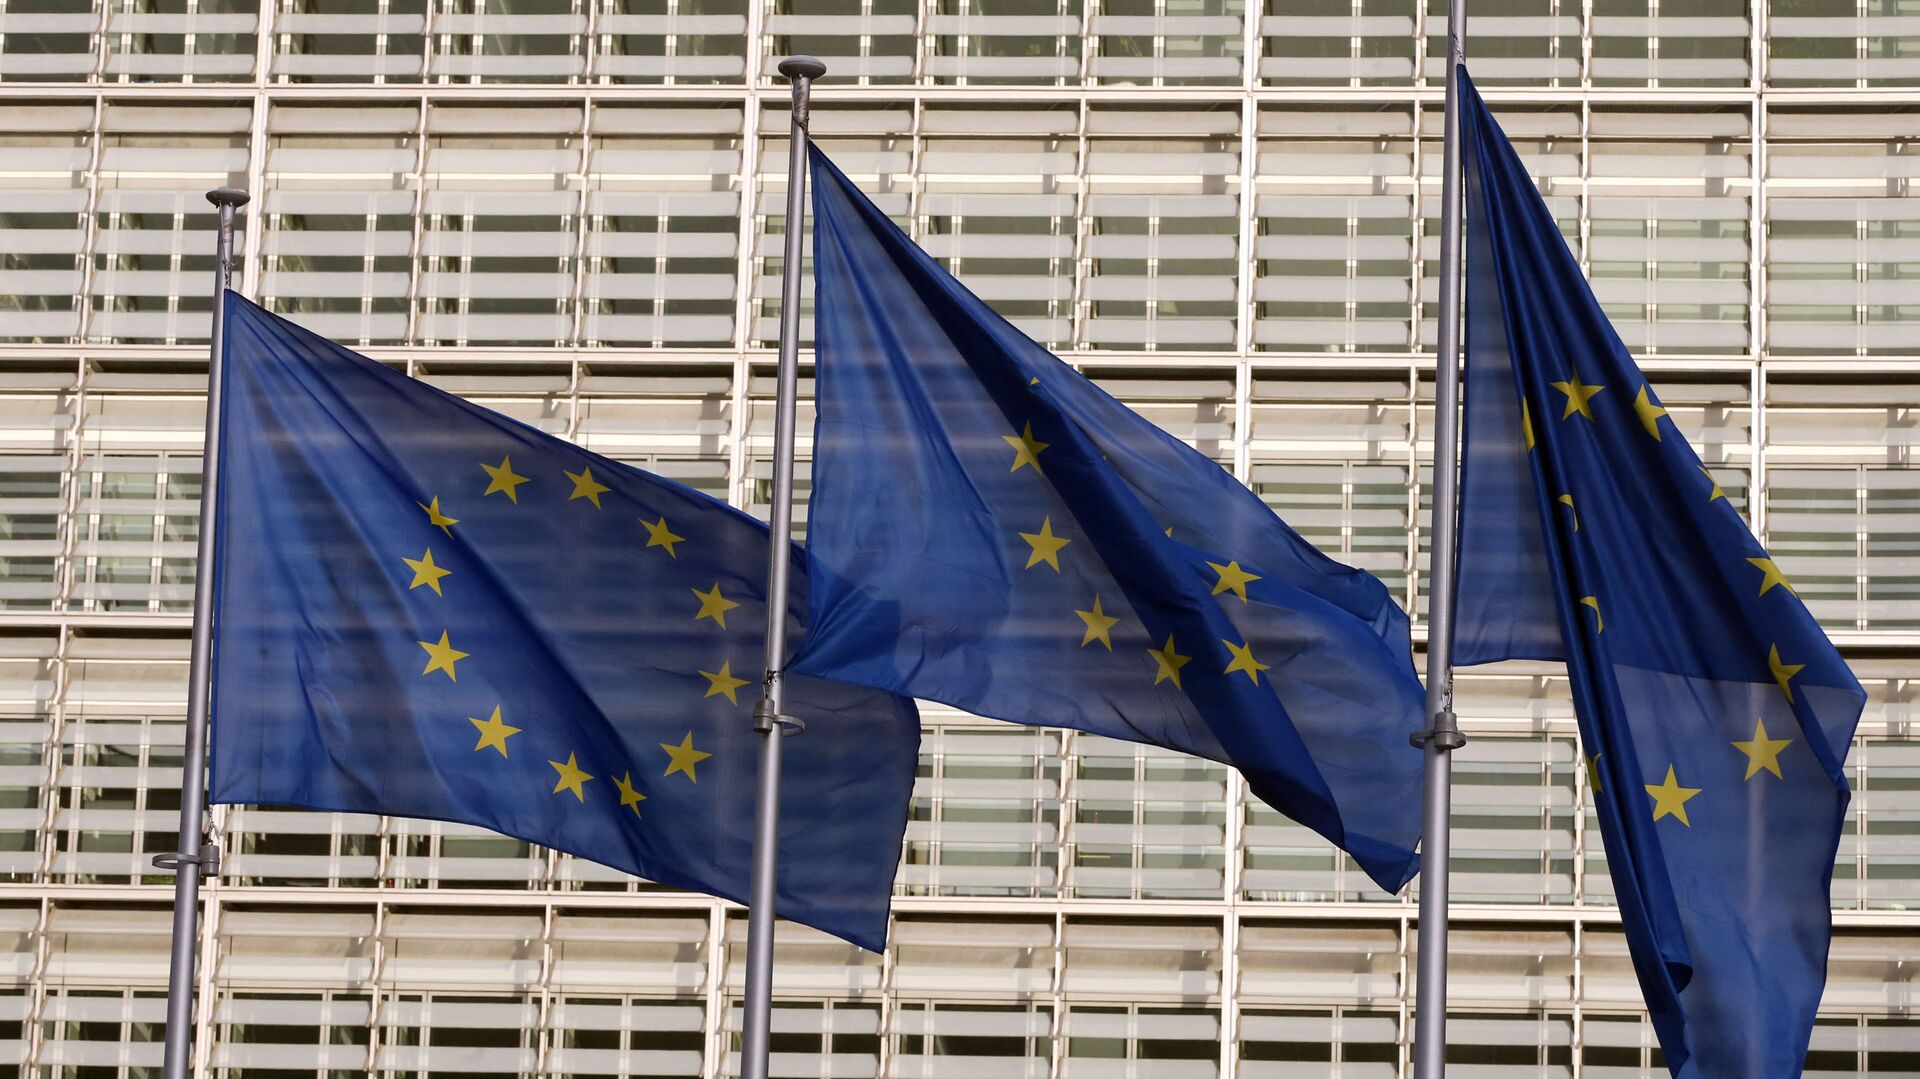 Флаги Европейского союза у штаб-квартиры Европейской комиссии в Брюсселе - Sputnik Lietuva, 1920, 15.03.2021